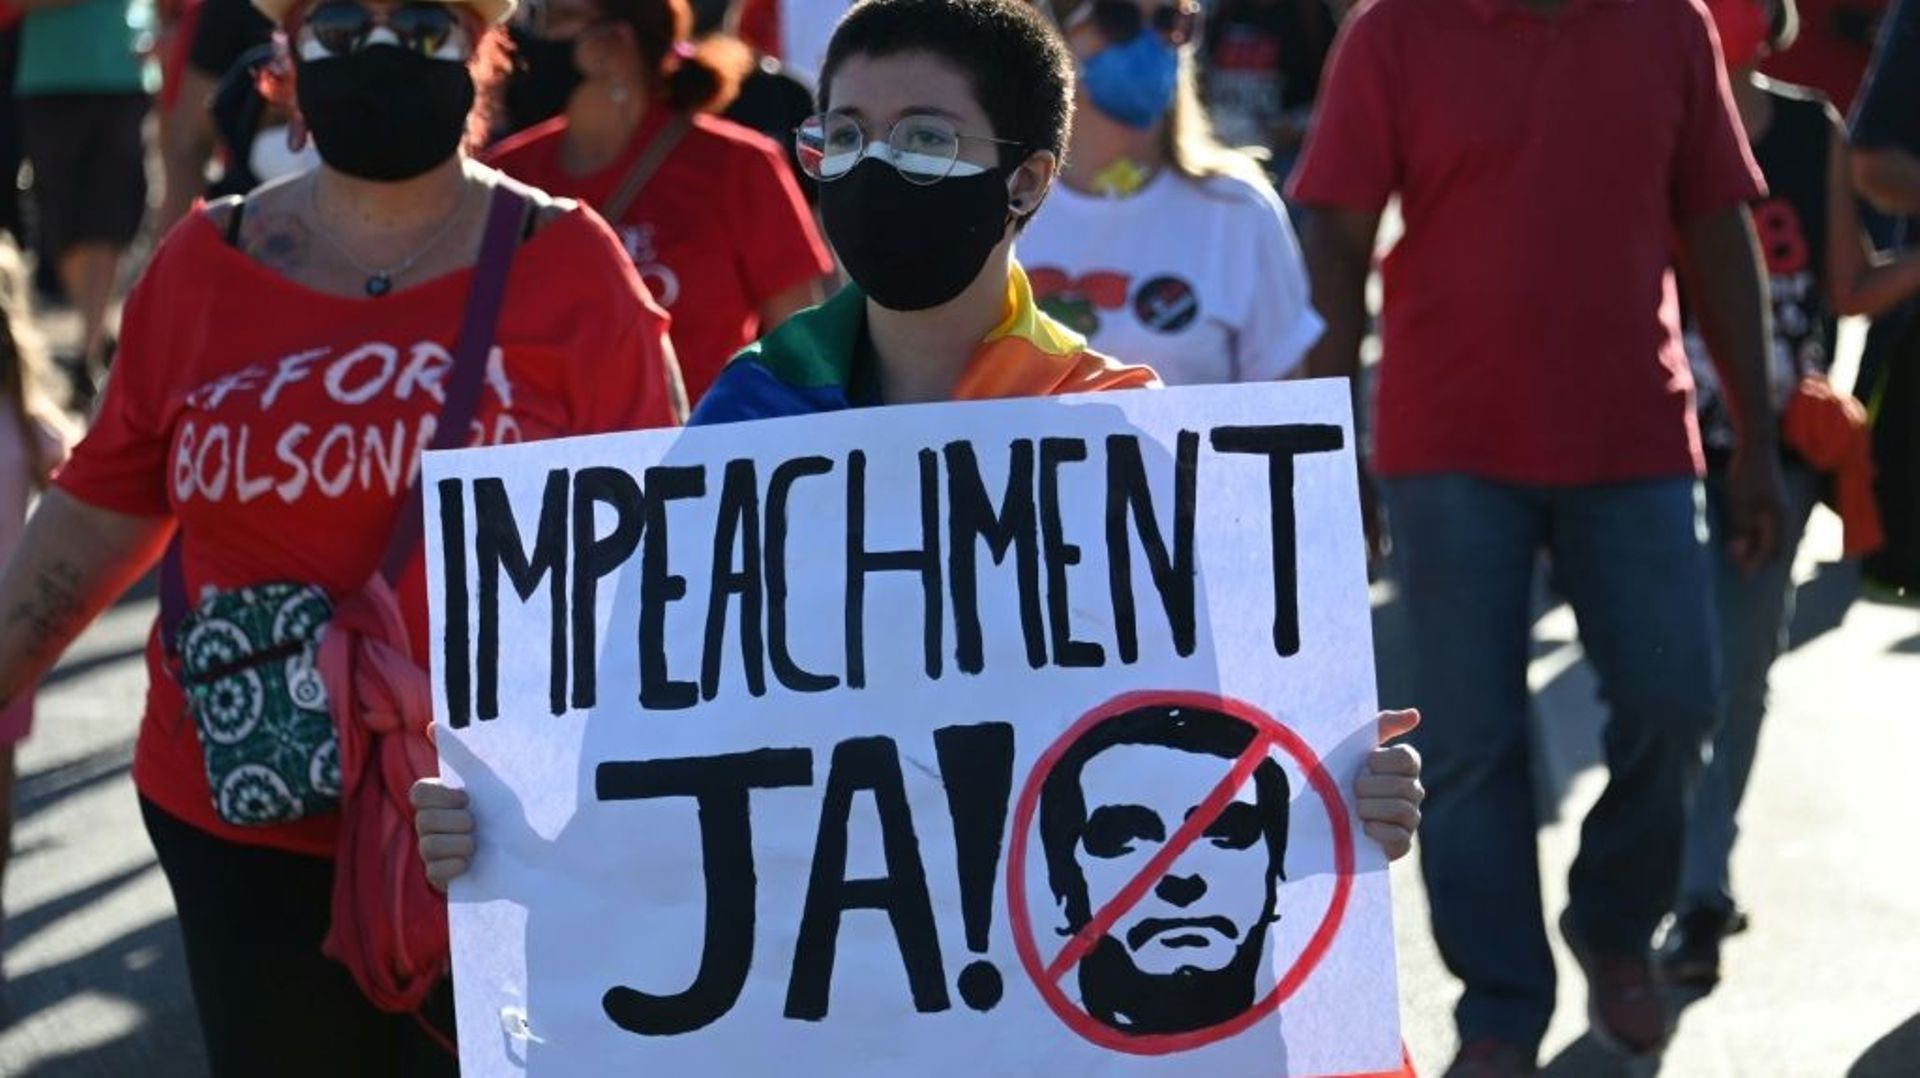 A Brasilia, de nombreux manifestants brandissaient des pancartes réclamant la  "destitution, maintenant!" lors de la mobilisation du 24 juillet 2021